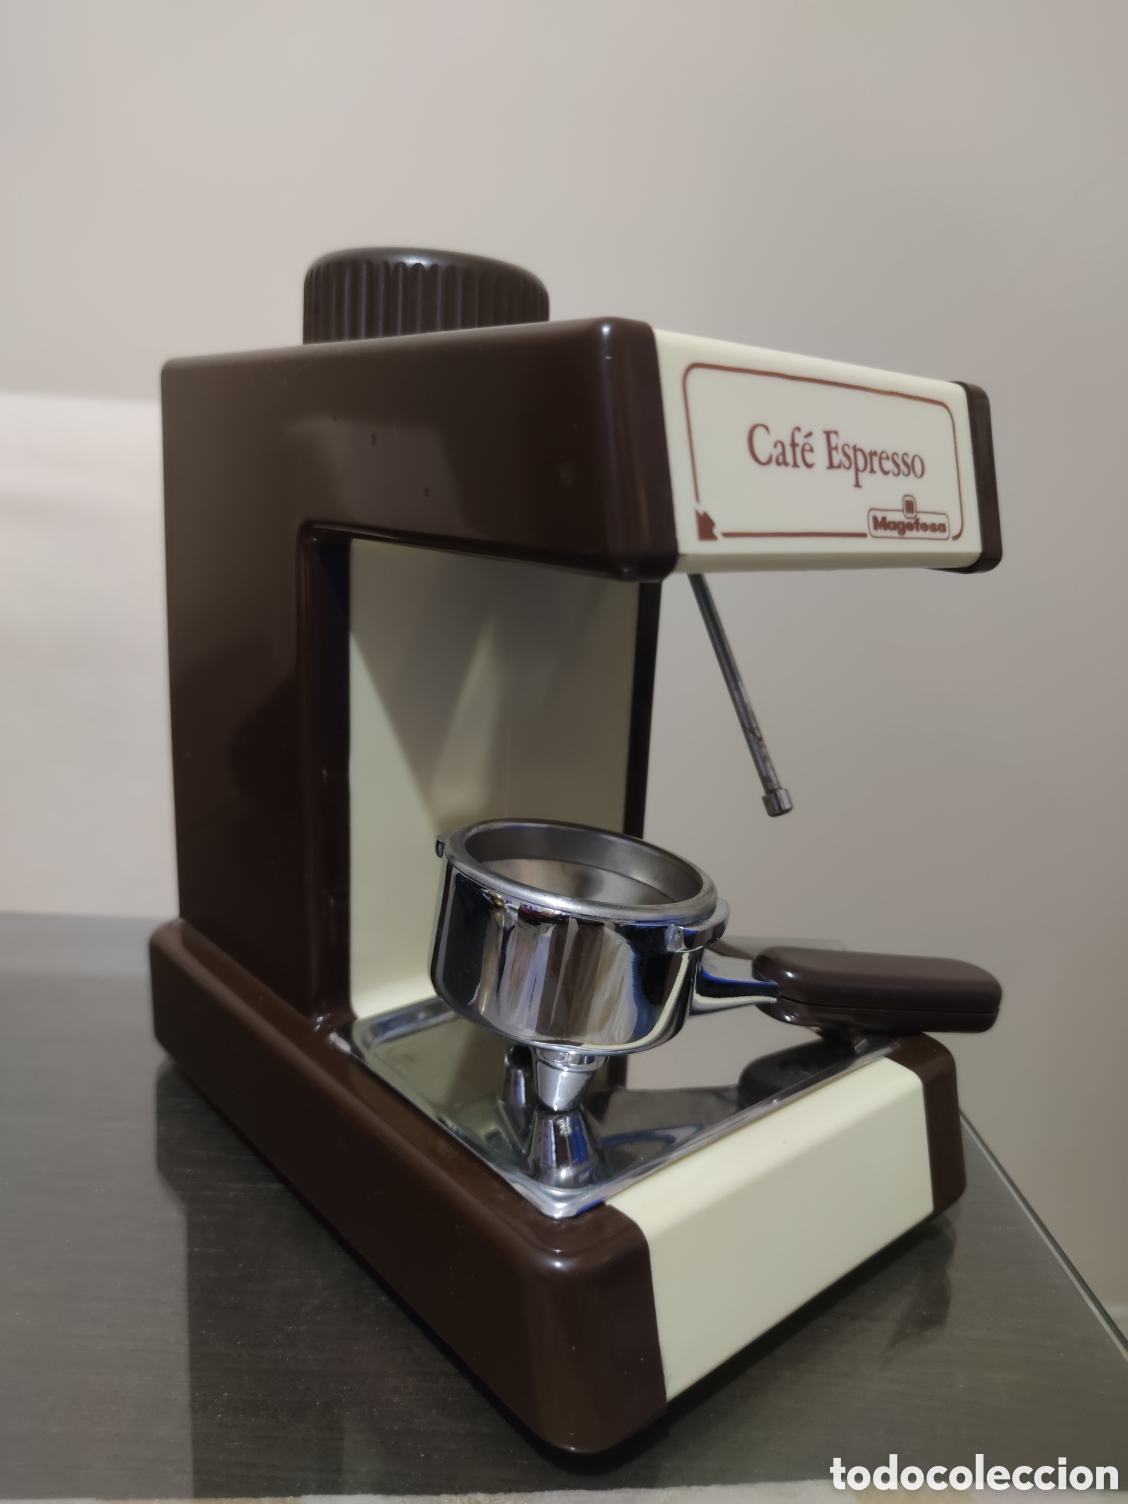 cafetera espresso magefesa vintage - Compra venta en todocoleccion